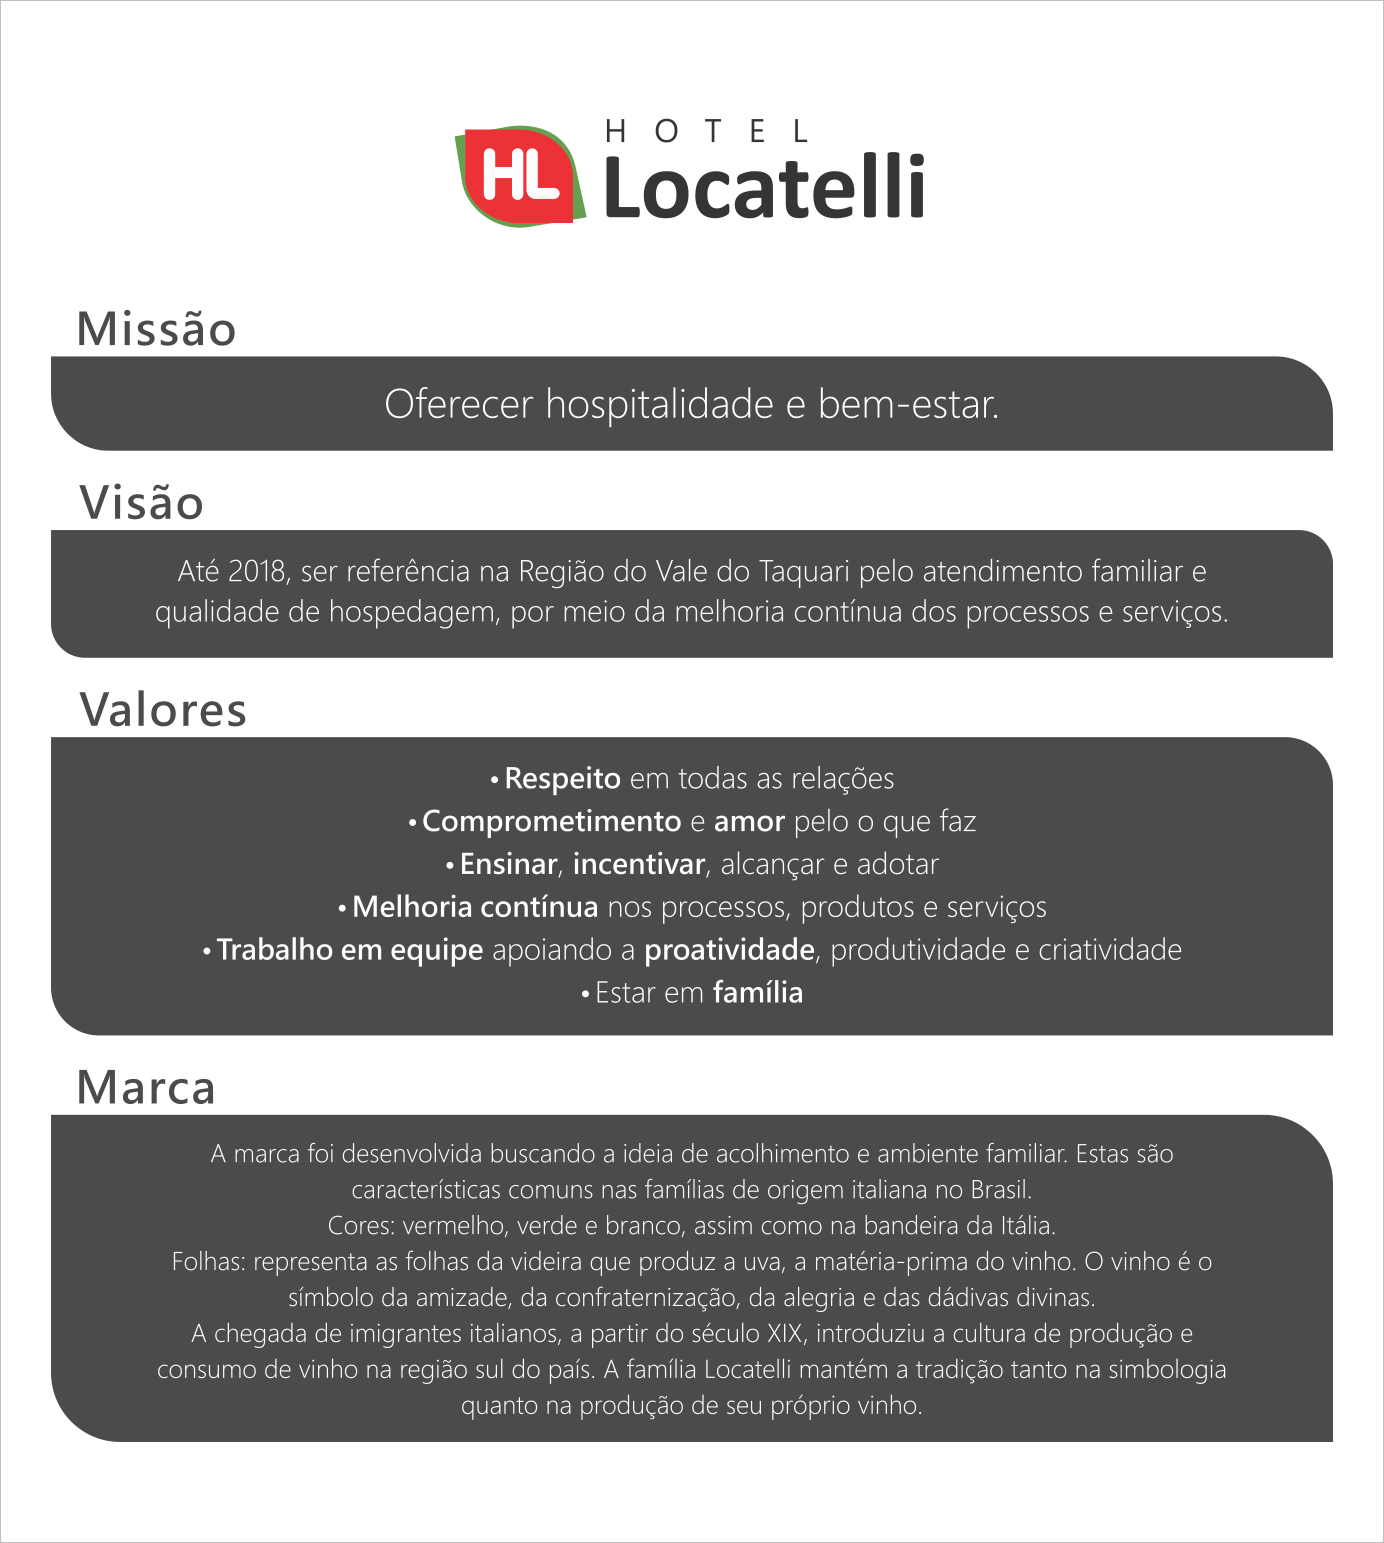 Missão e Valores - Hotel Locatelli